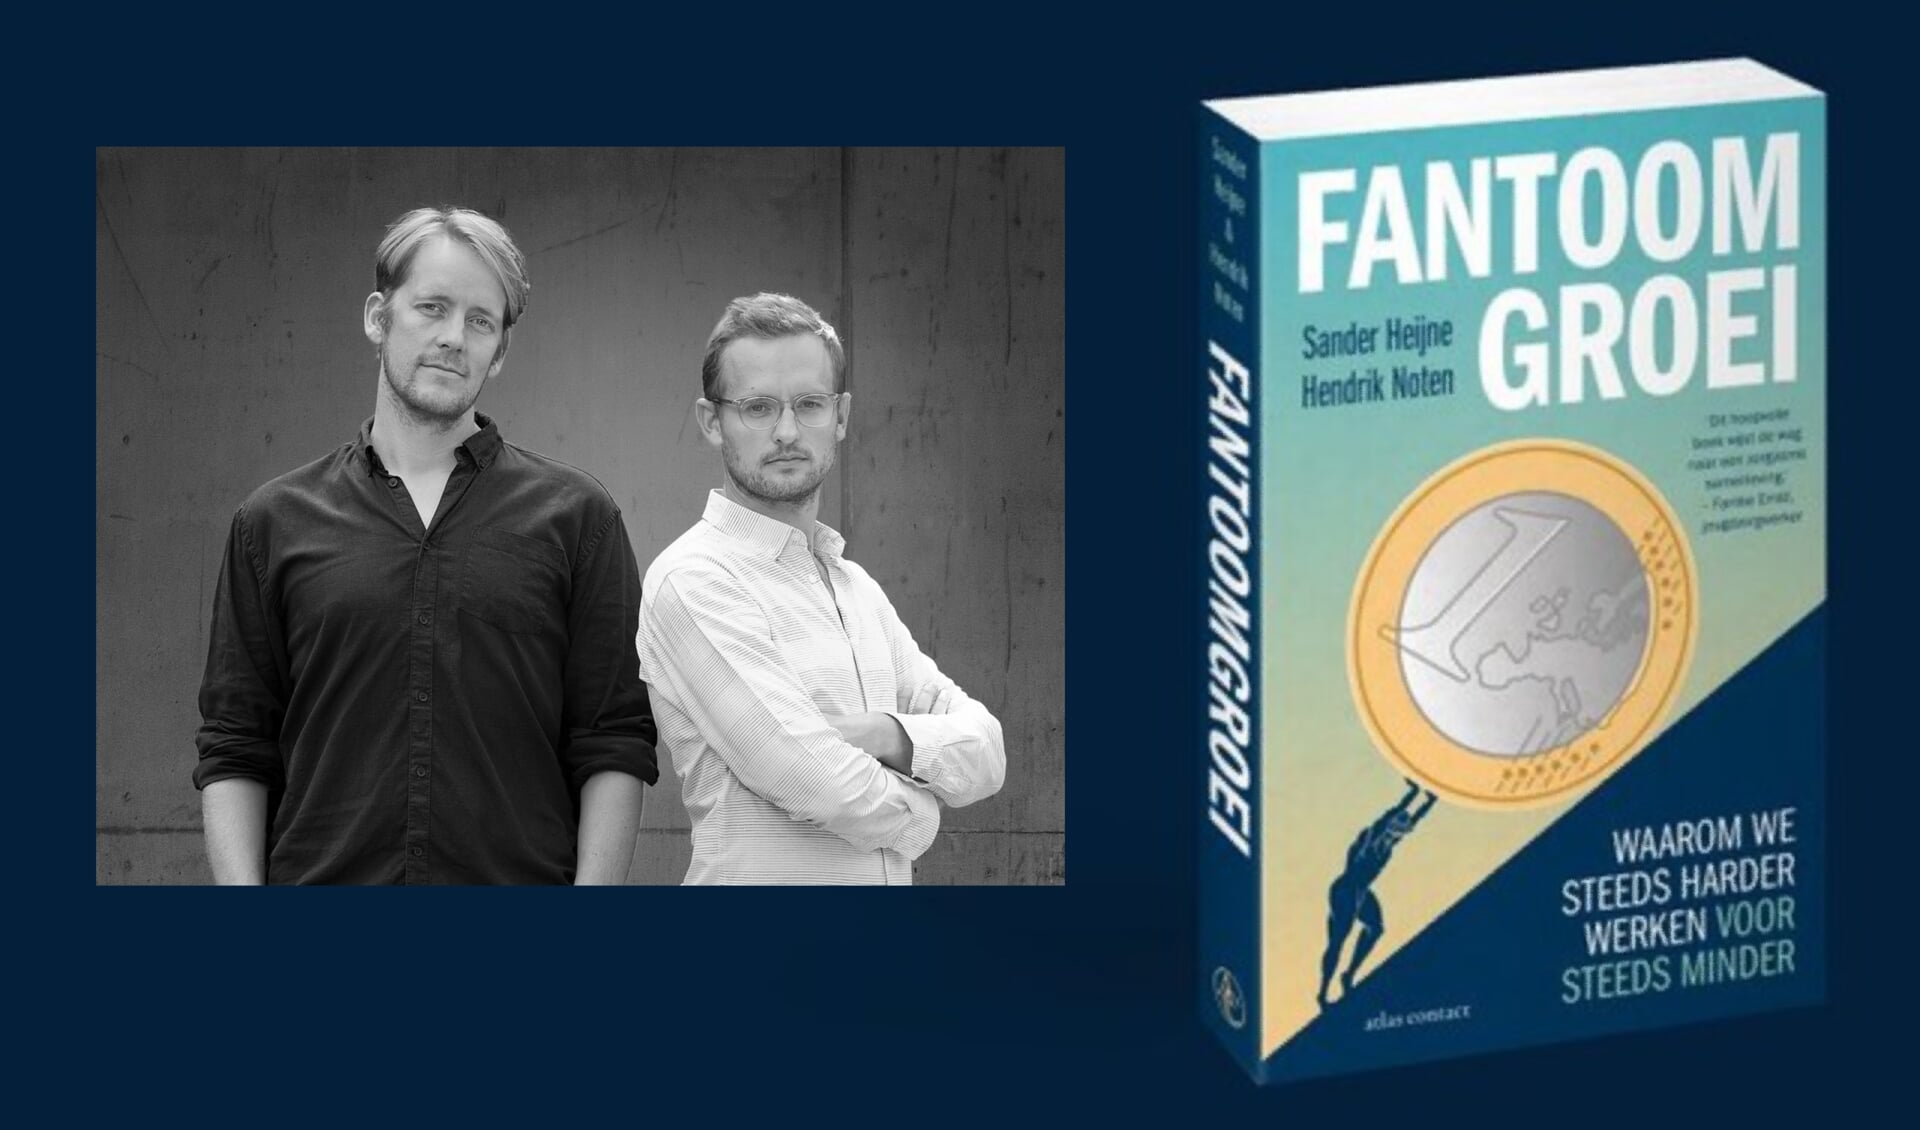 Sander Heijne en Hendrik Noten zijn de auteurs van Fantoomgroei. Foto: Fjodor Buis